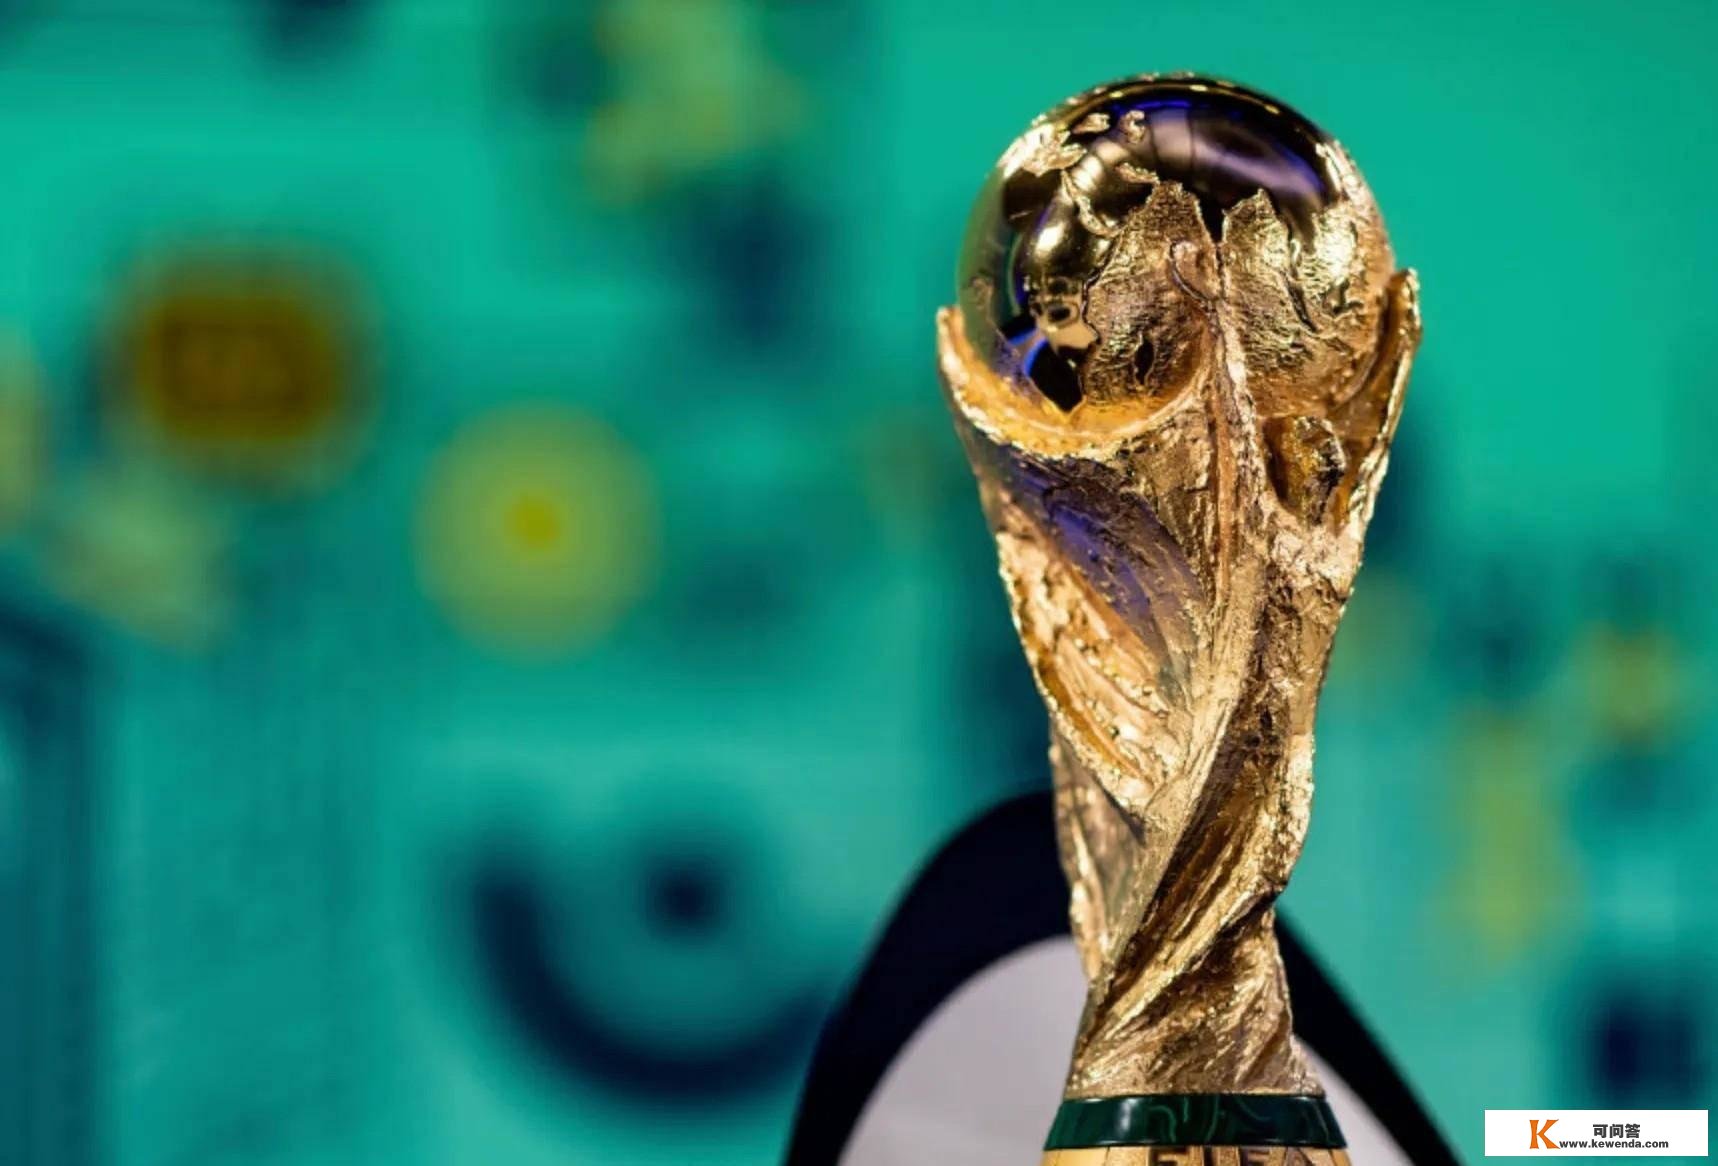 来看！2022卡塔尔世界杯旁观攻略，梅西和C罗最初的时机能圆梦吗